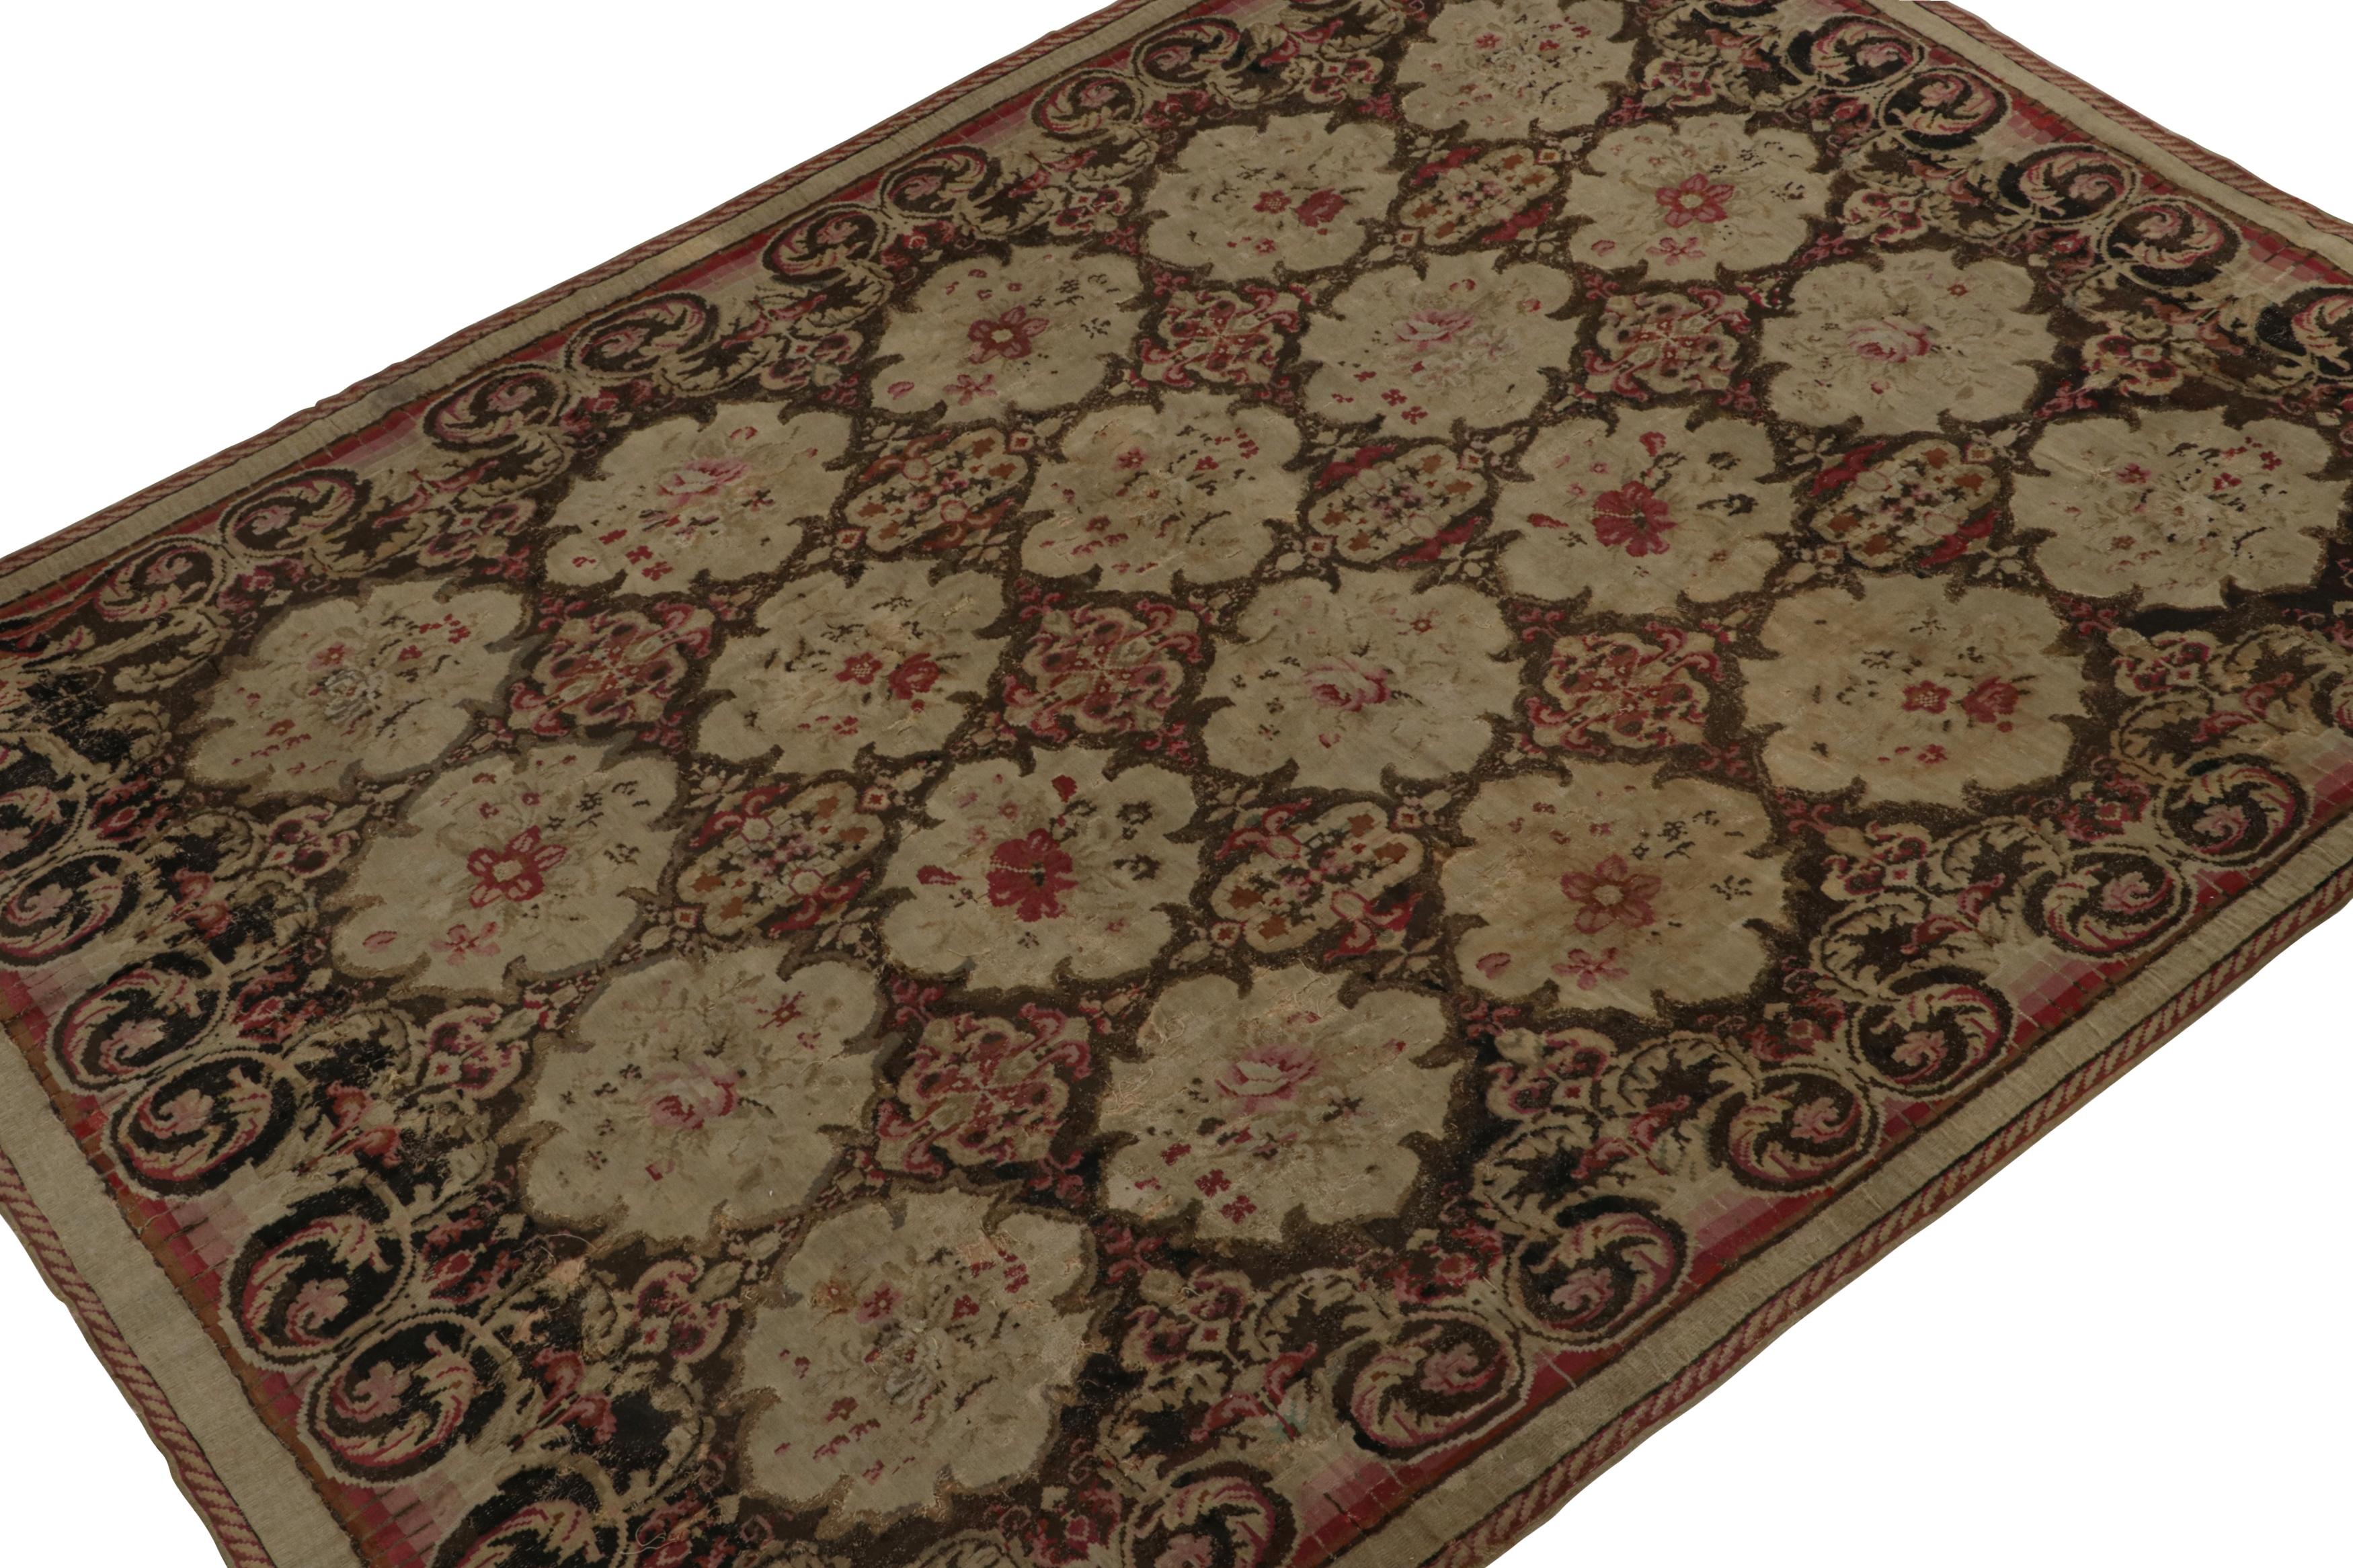 Tissé à la main en laine, ce tapis kilim antique 7x10 de Bessarabie proviendrait de la Roumanie du milieu du 19e siècle. Son design privilégie les tons bruns riches, avec des motifs floraux élaborés et des cartouches à grande échelle. 

Sur le